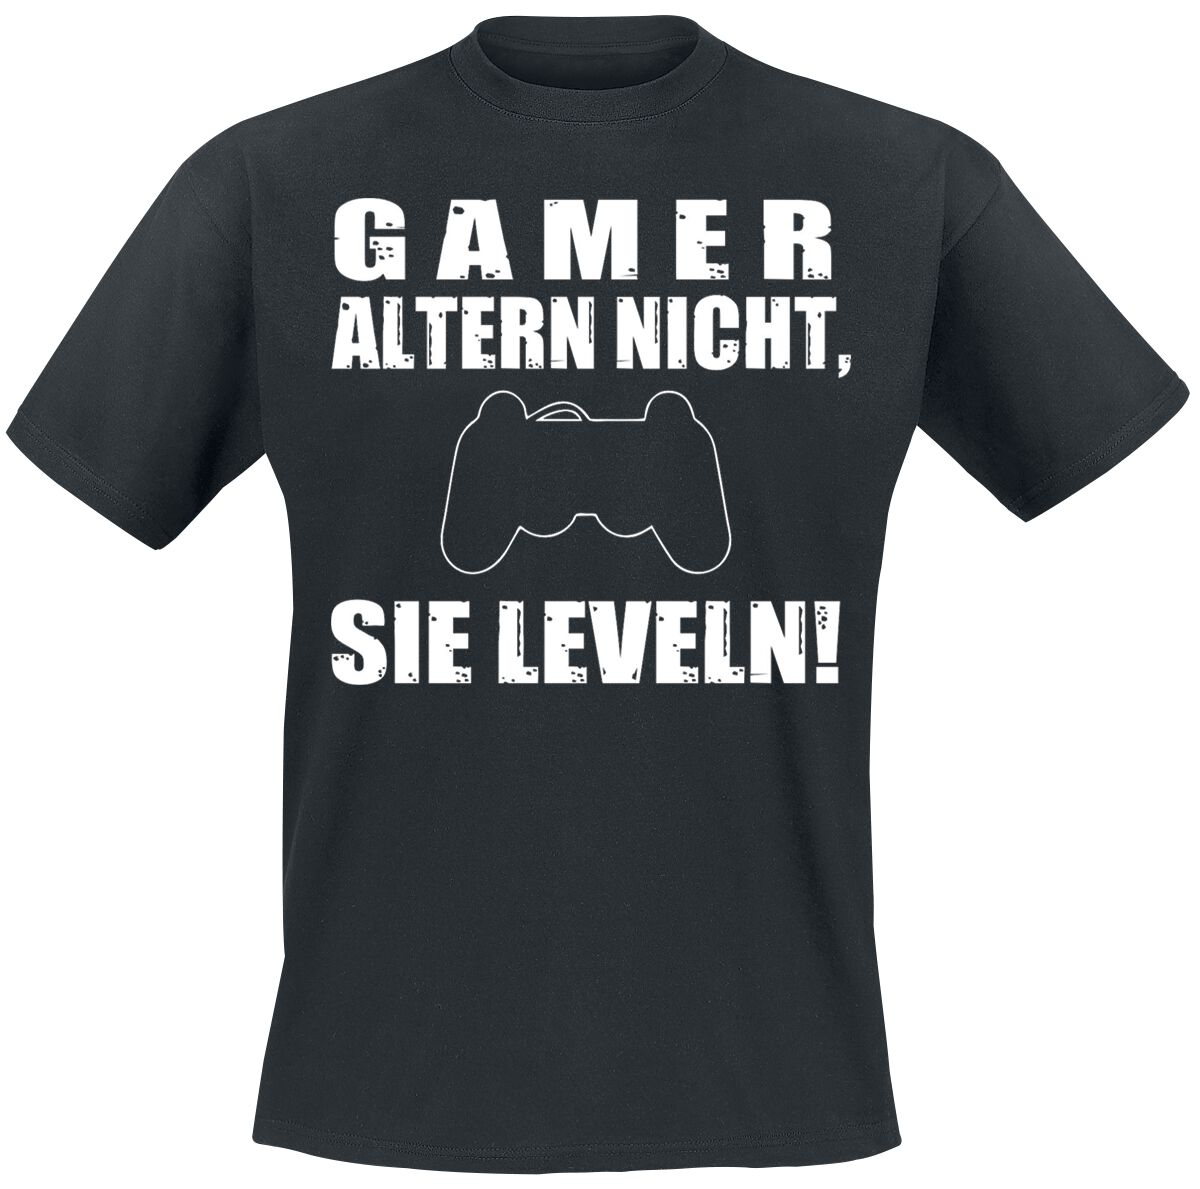 Sprüche - Gaming T-Shirt - Gamer altern nicht, sie leveln! - M bis 3XL - für Männer - Größe M - schwarz  - EMP exklusives Merchandise!